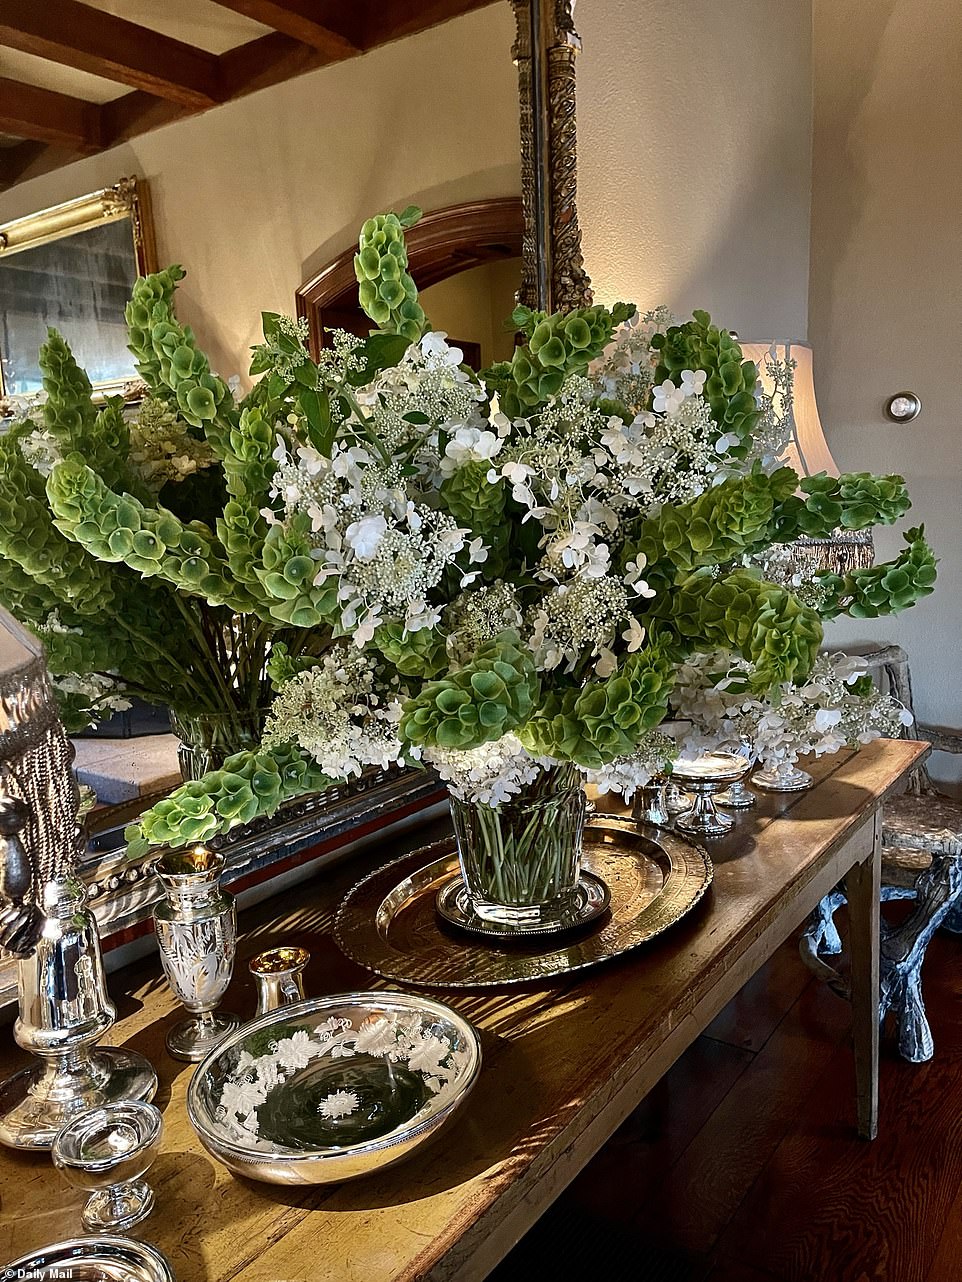 Atemberaubend: Die TV-Persönlichkeit enthüllte, dass ihr bester Freund Kevin Sharkey riesige Blumenarrangements für ihr Zuhause mit Blumen aus ihrem Garten gemacht hat, darunter Hortensien, Löwenmäulchen, Feinkost und Lilien.